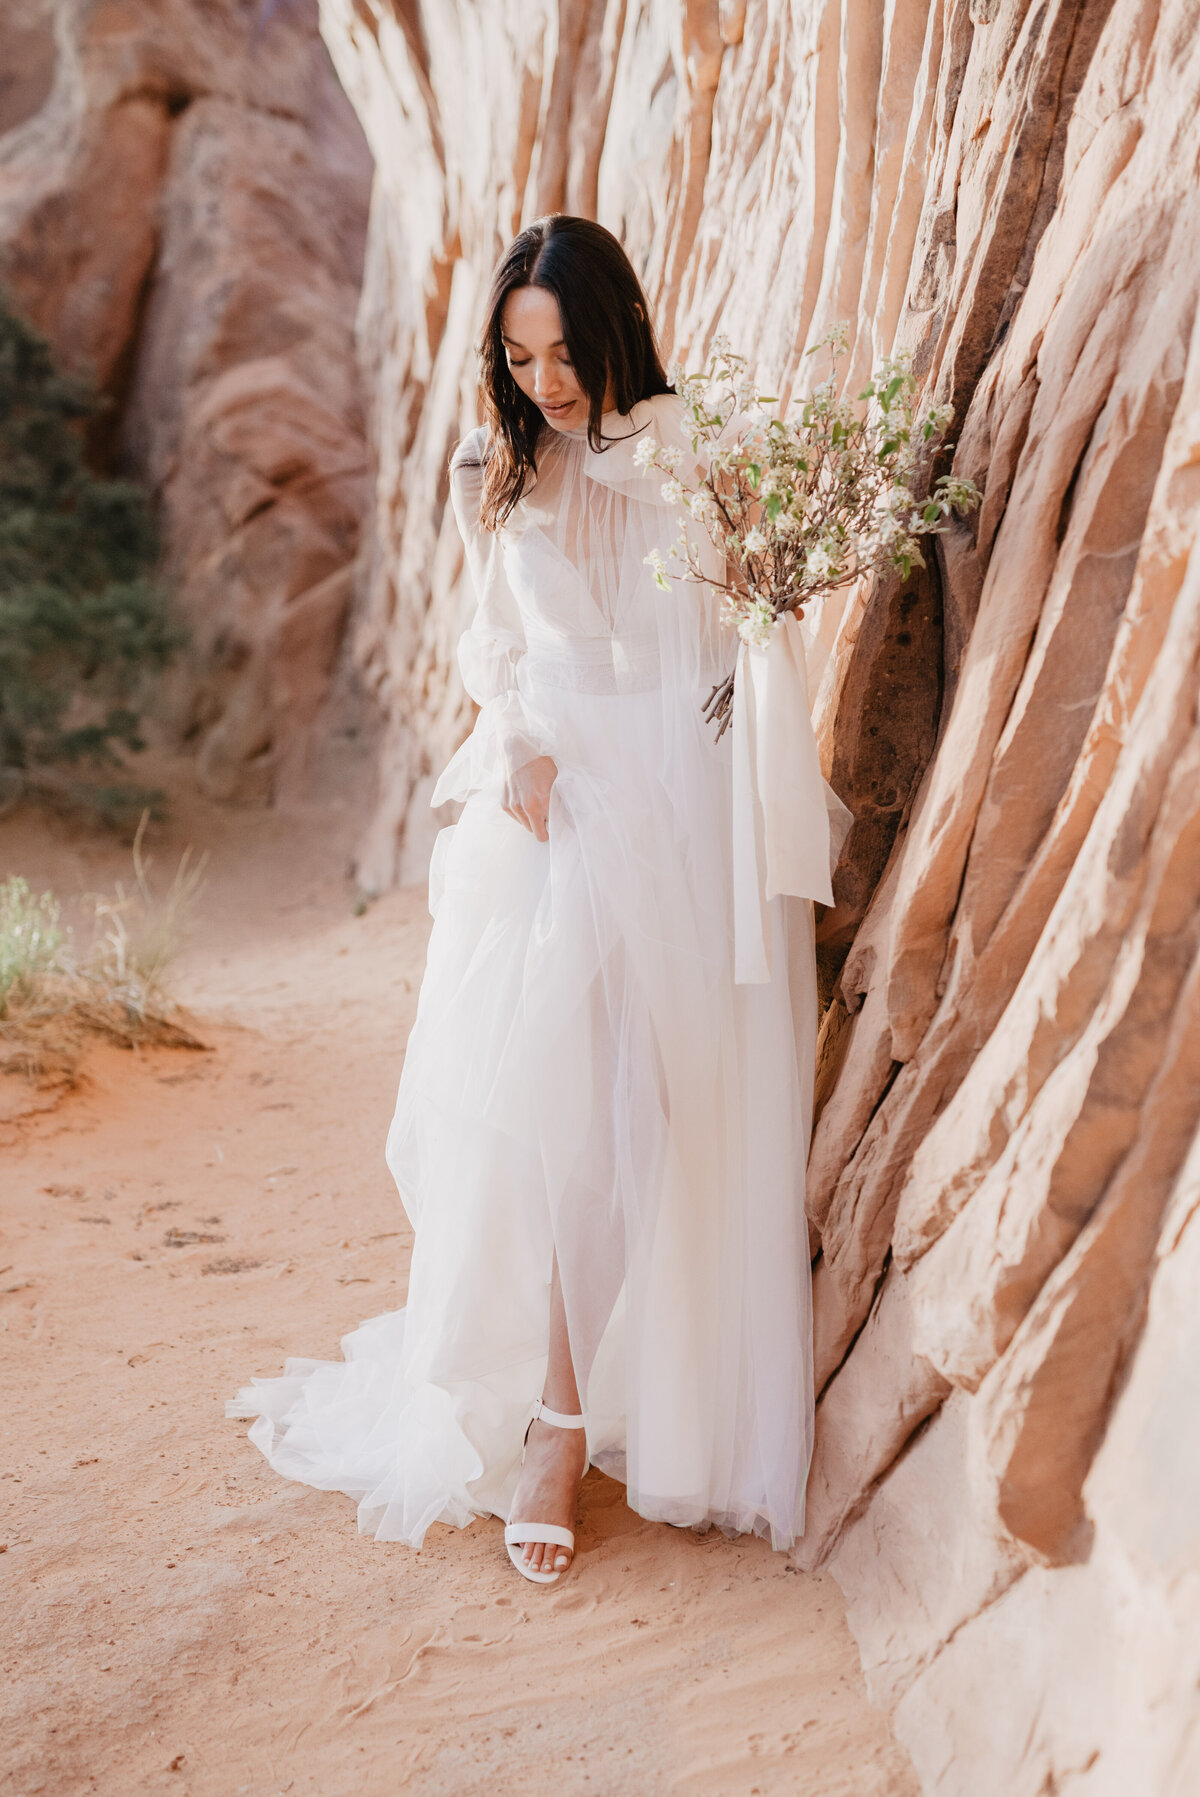 Utah elopement photographer captures bride's wedding shoes